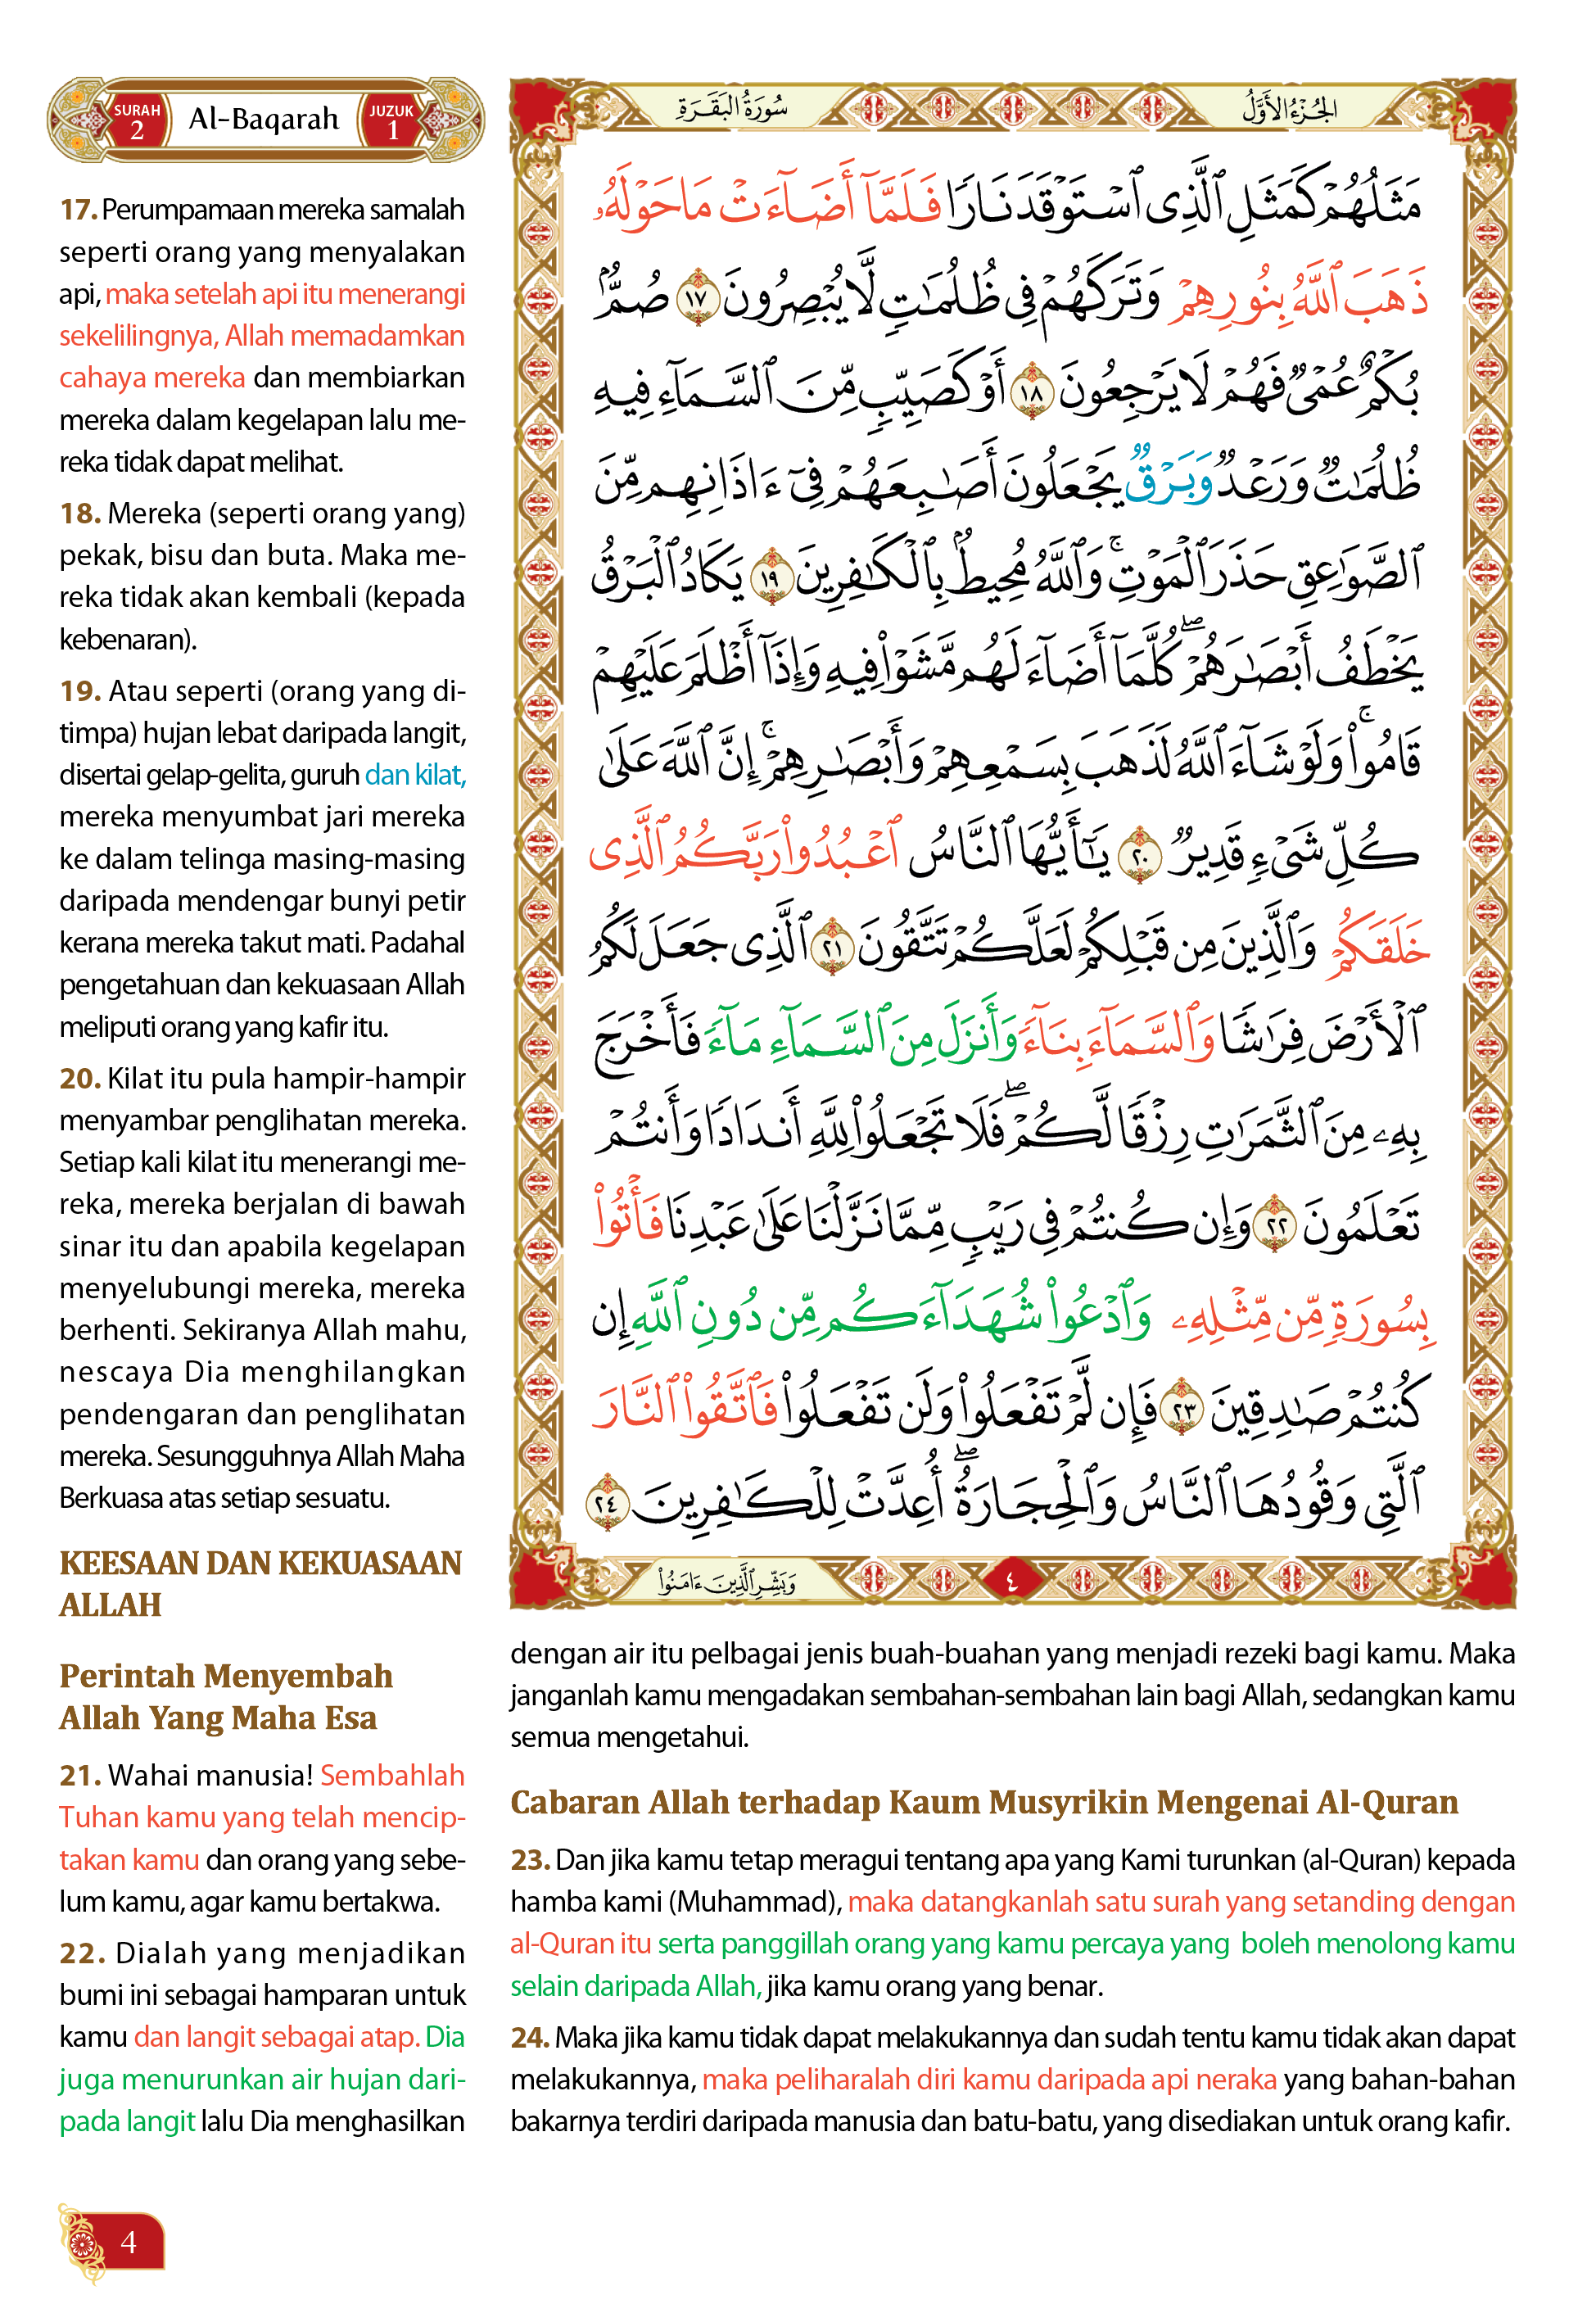 Al-Quran Terjemahan Al-Ghufran Dengan Panduan – (TBAQ1008)